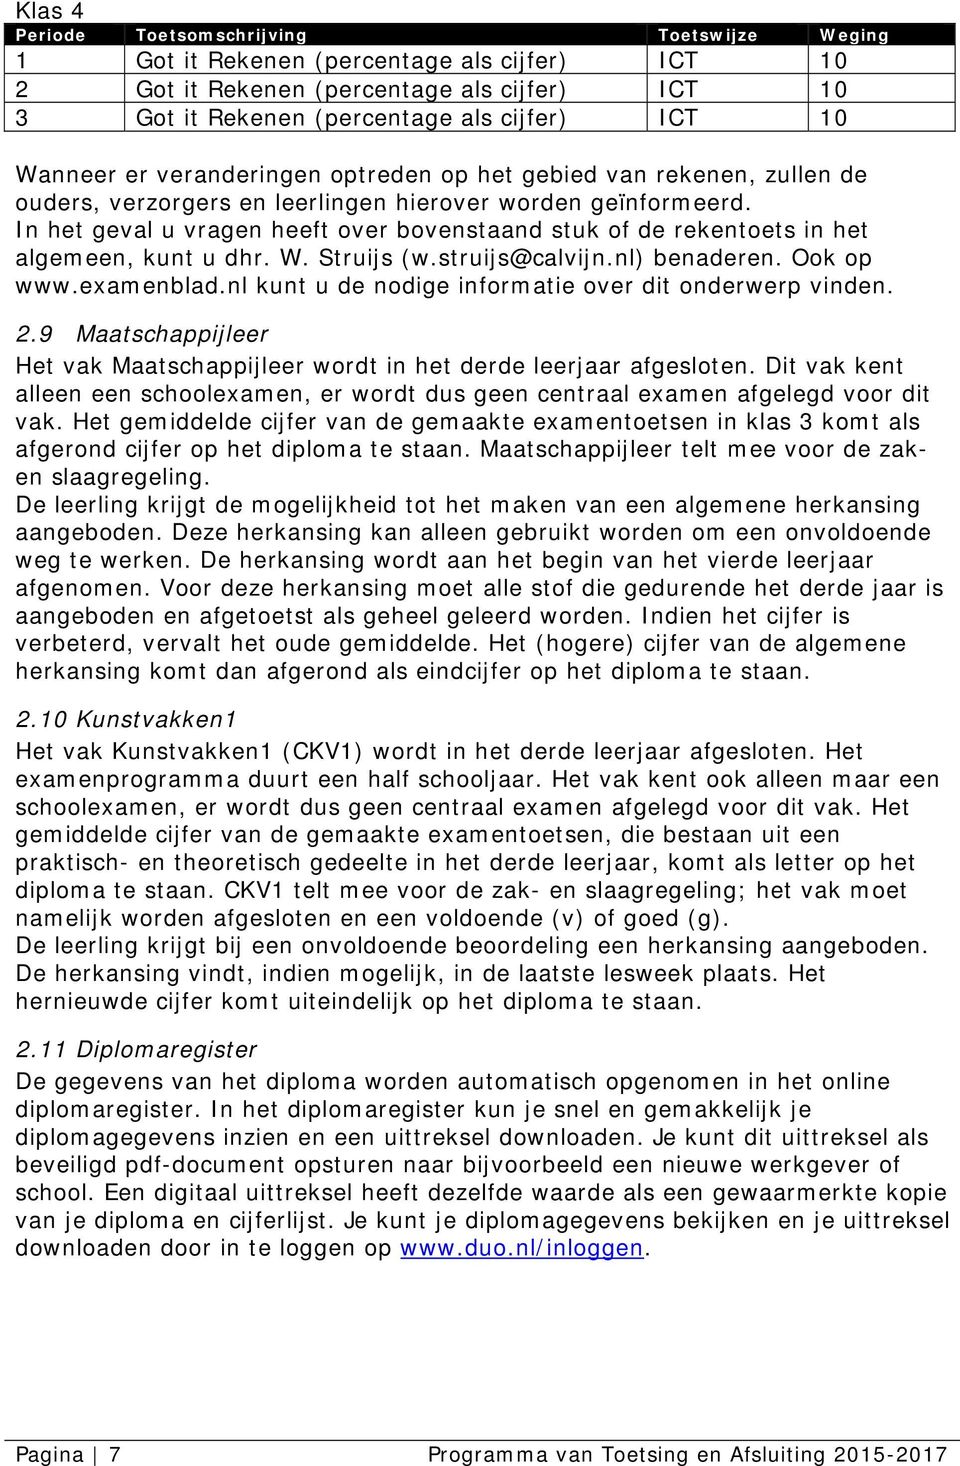 In het geval u vragen heeft over bovenstaand stuk of de rekentoets in het algemeen, kunt u dhr. W. Struijs (w.struijs@calvijn.nl) benaderen. Ook op www.examenblad.